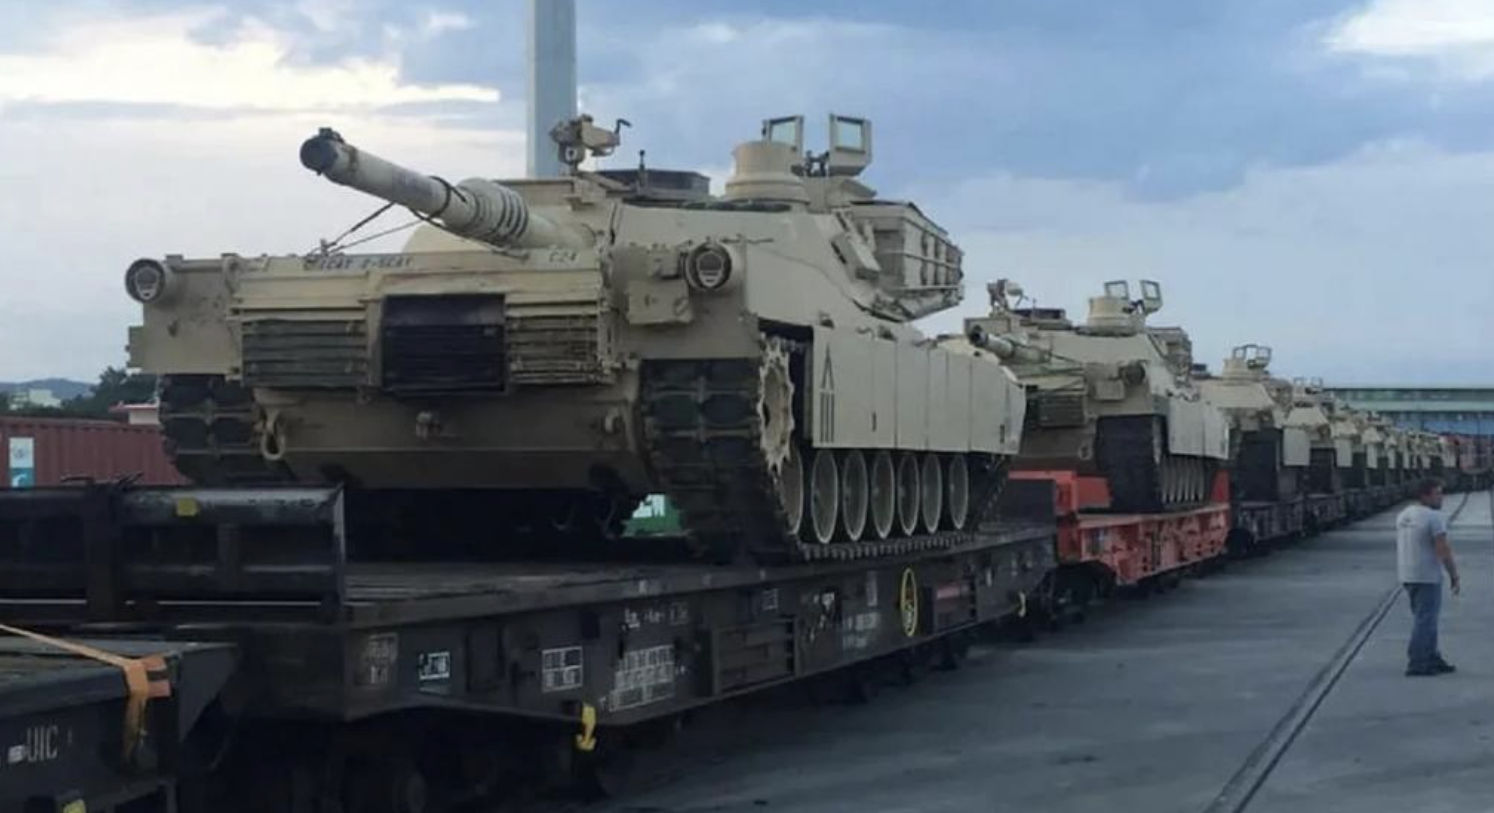 Αλεξανδρούπολη: Εκτροχιάστηκε τρένο που μετέφερε ΝΑΤΟϊκά άρματα μάχης και κοντέινερ στην Α. Ευρώπη